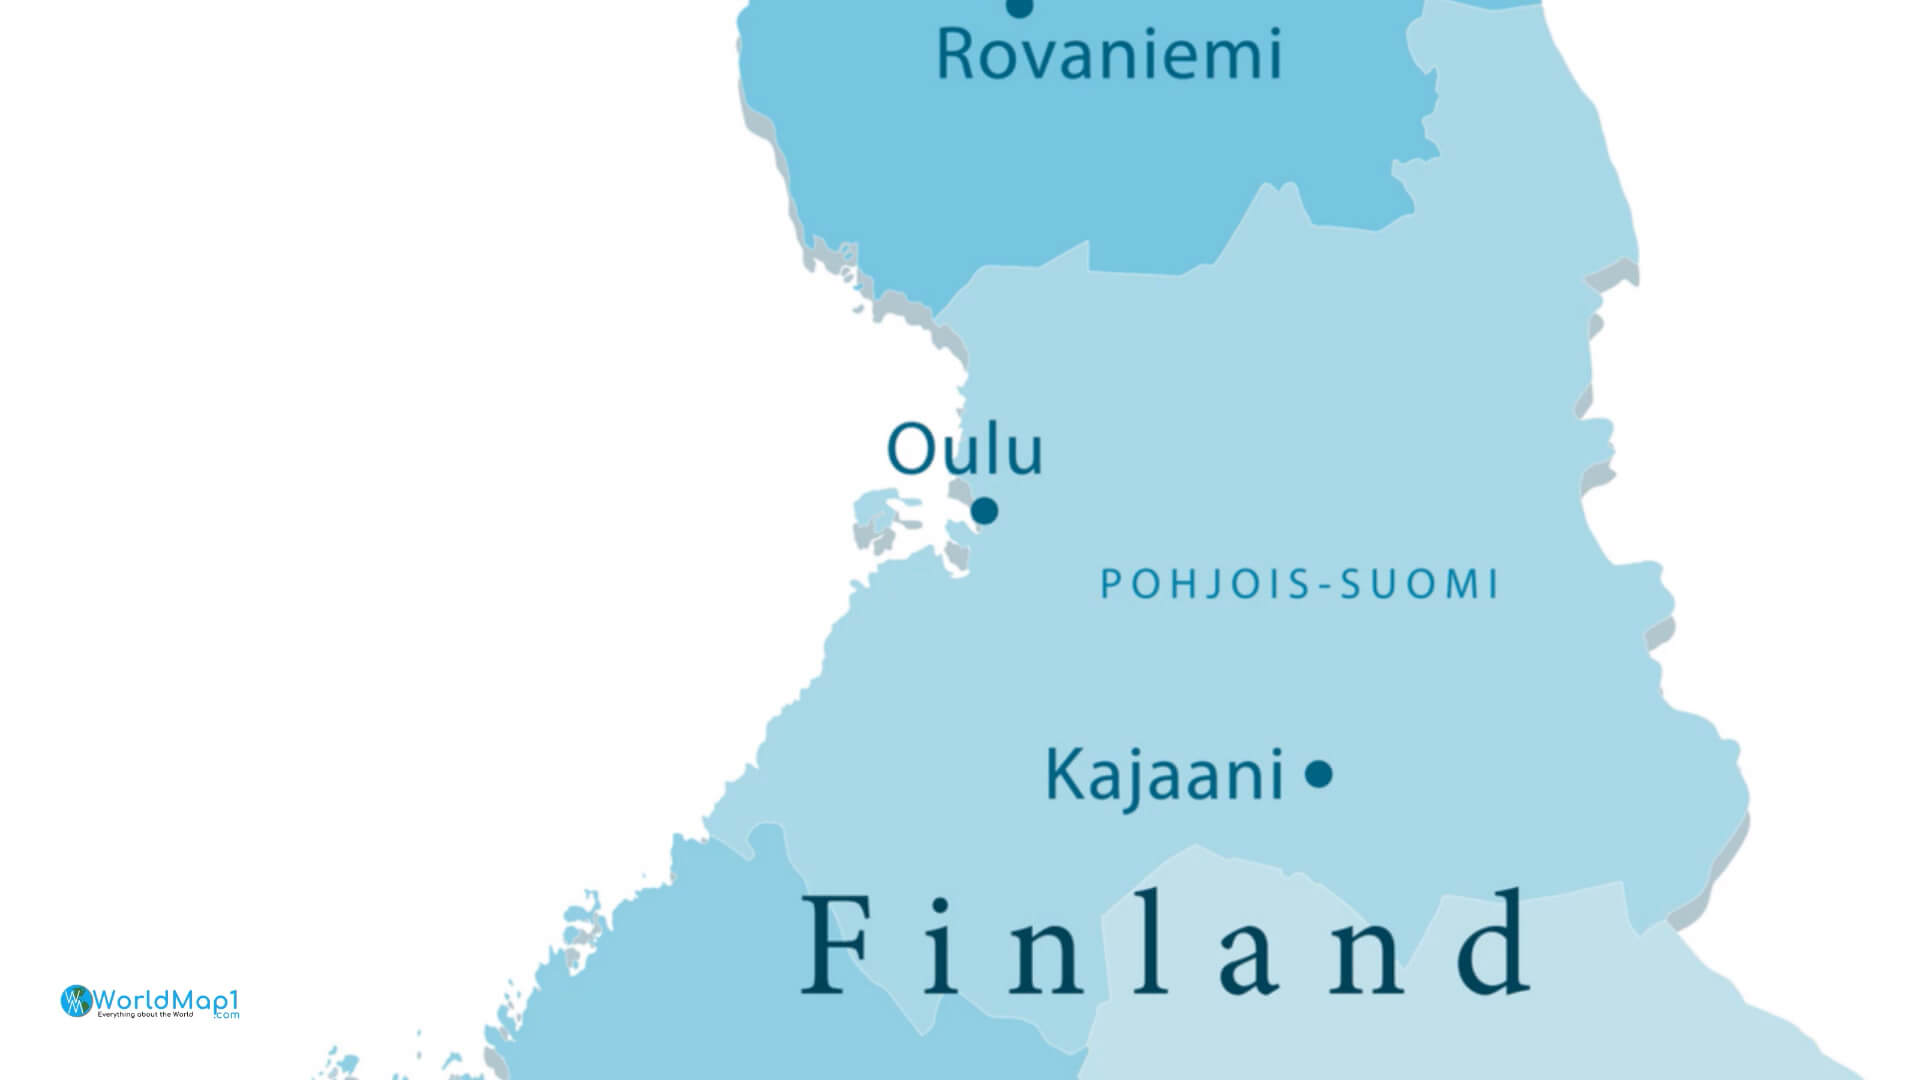 Finnland Städtekarte mit Rovaniemi Oulu und Kajaani